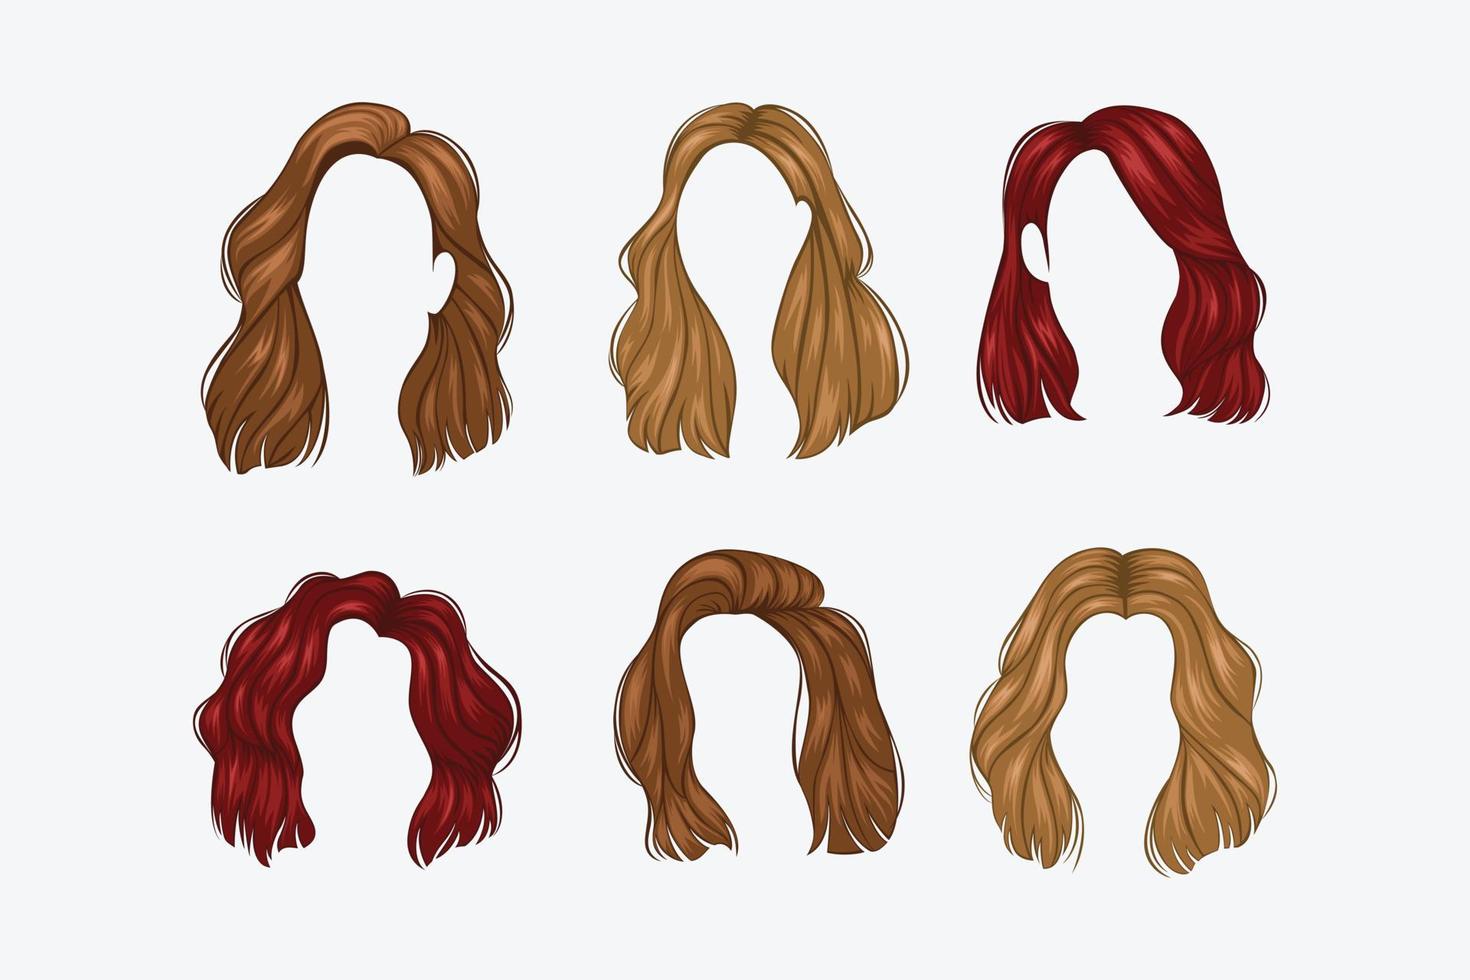 conjunto de penteados femininos variados vetor